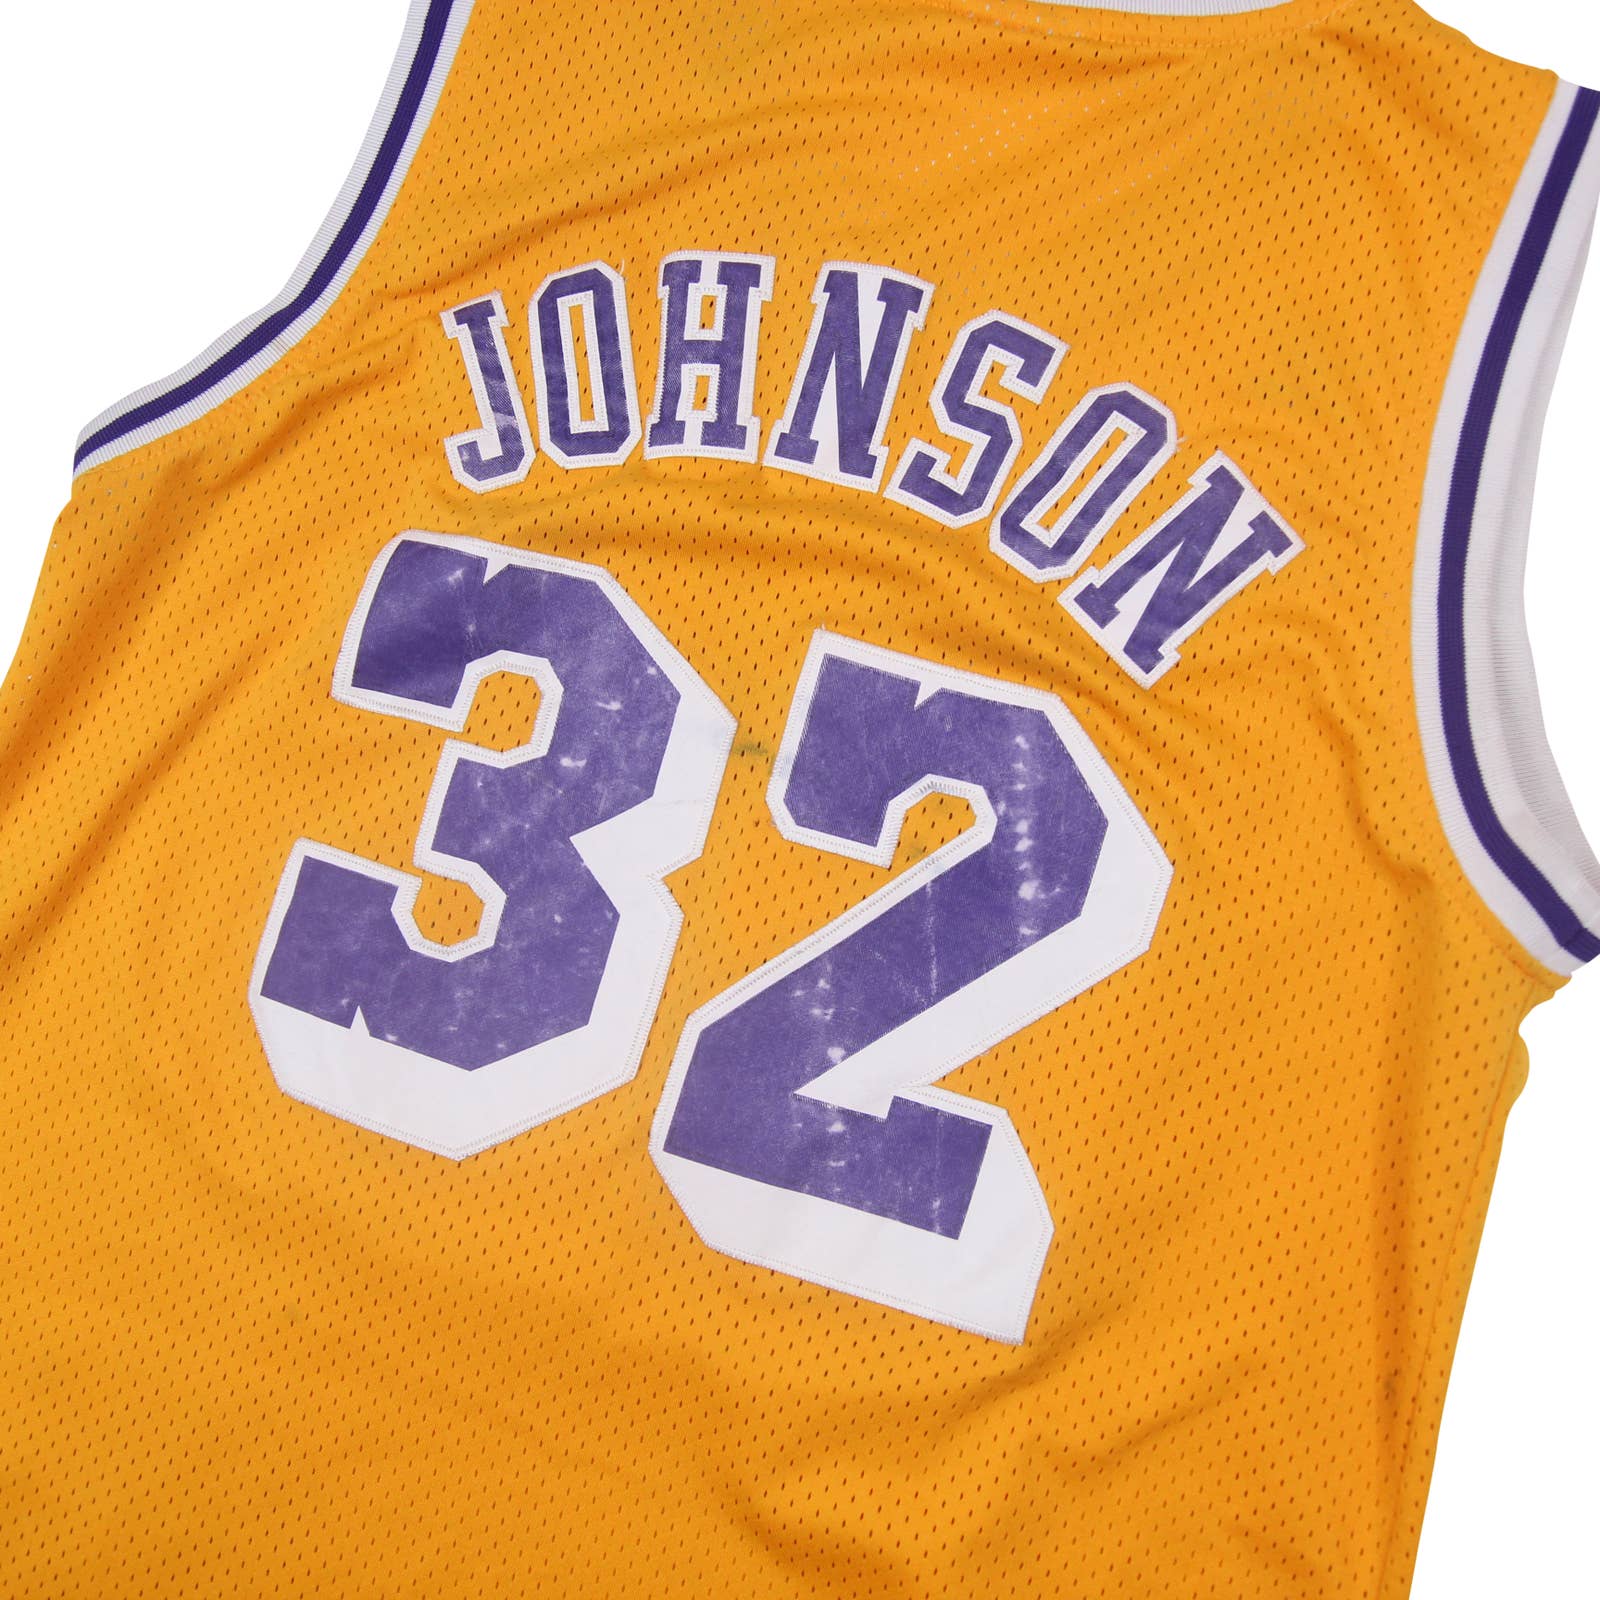 1991-92 yellow LA Lakers Champion Magic Johnson #32 basketball jersey, retroiscooler